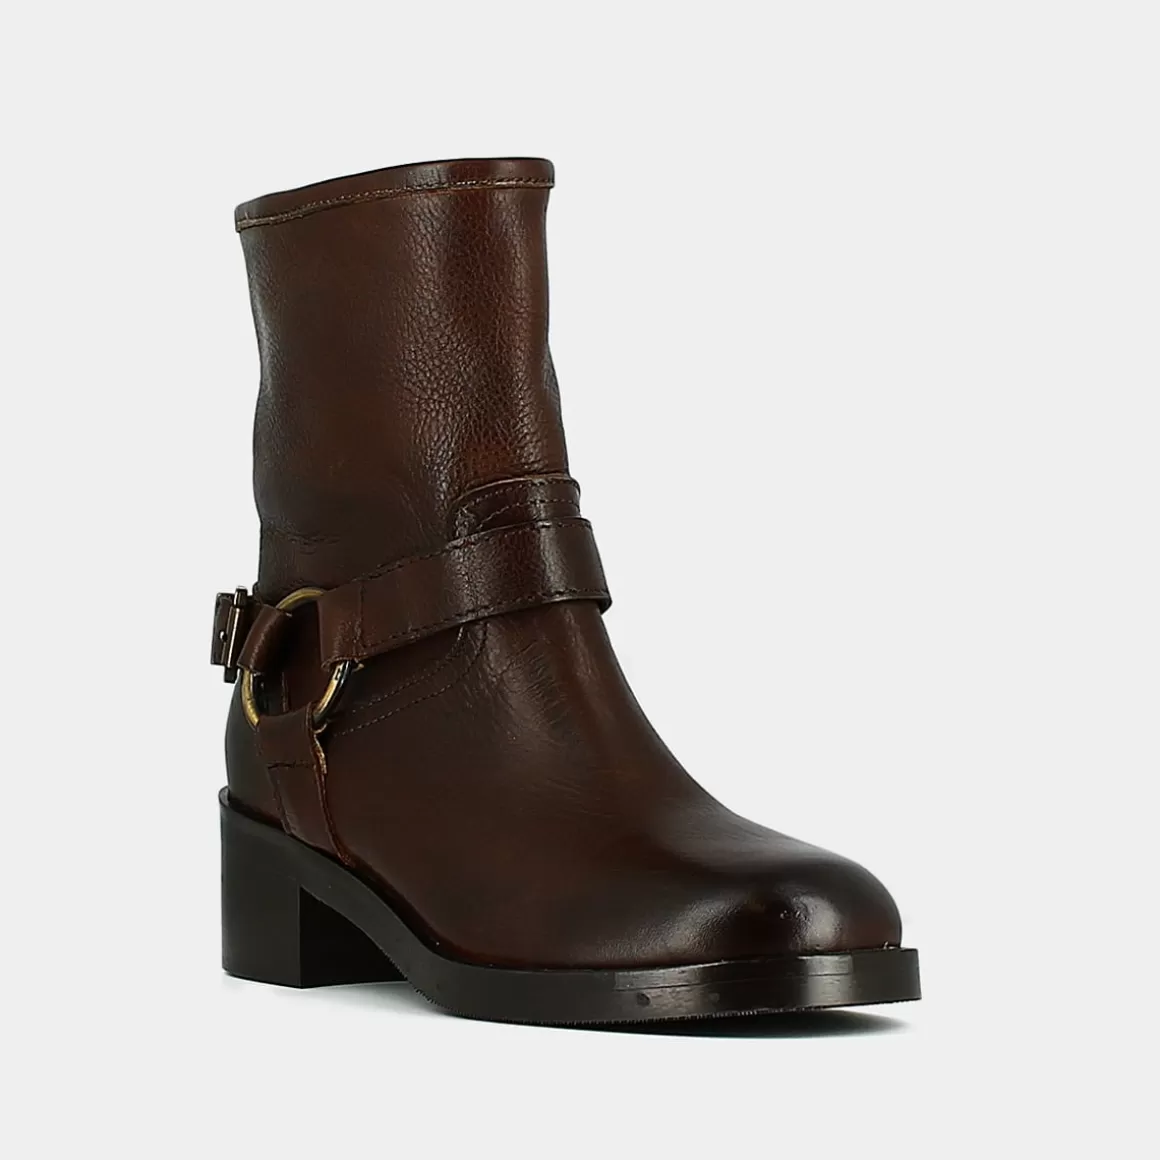 Buckle boots<Jonak Online